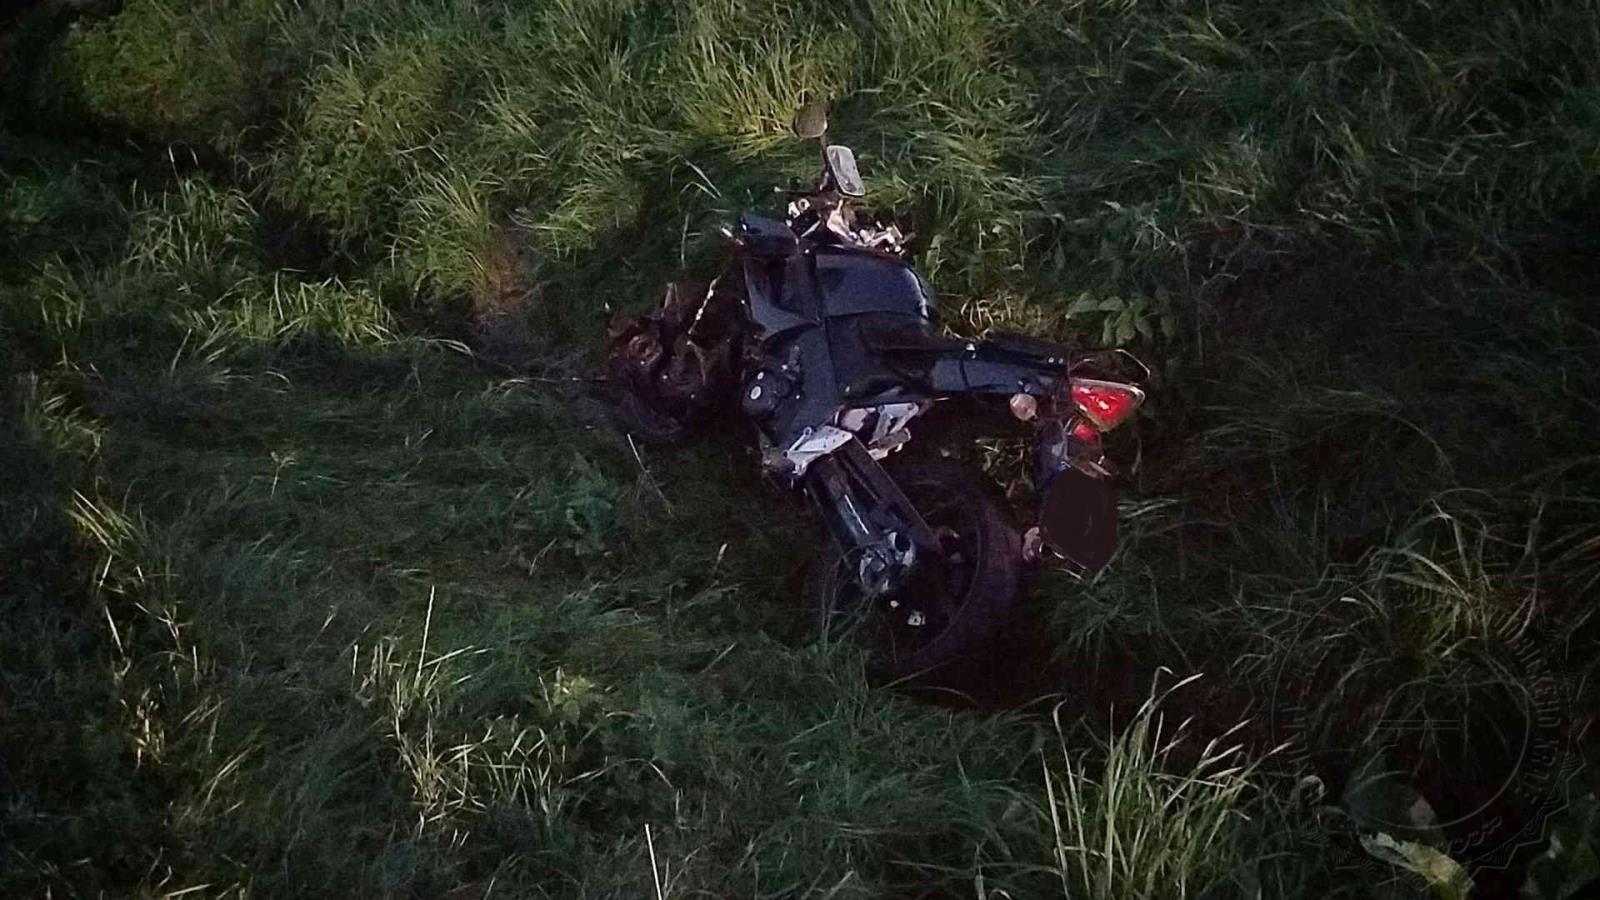 nehoda motorky Perálec 20.9.2020.jpg